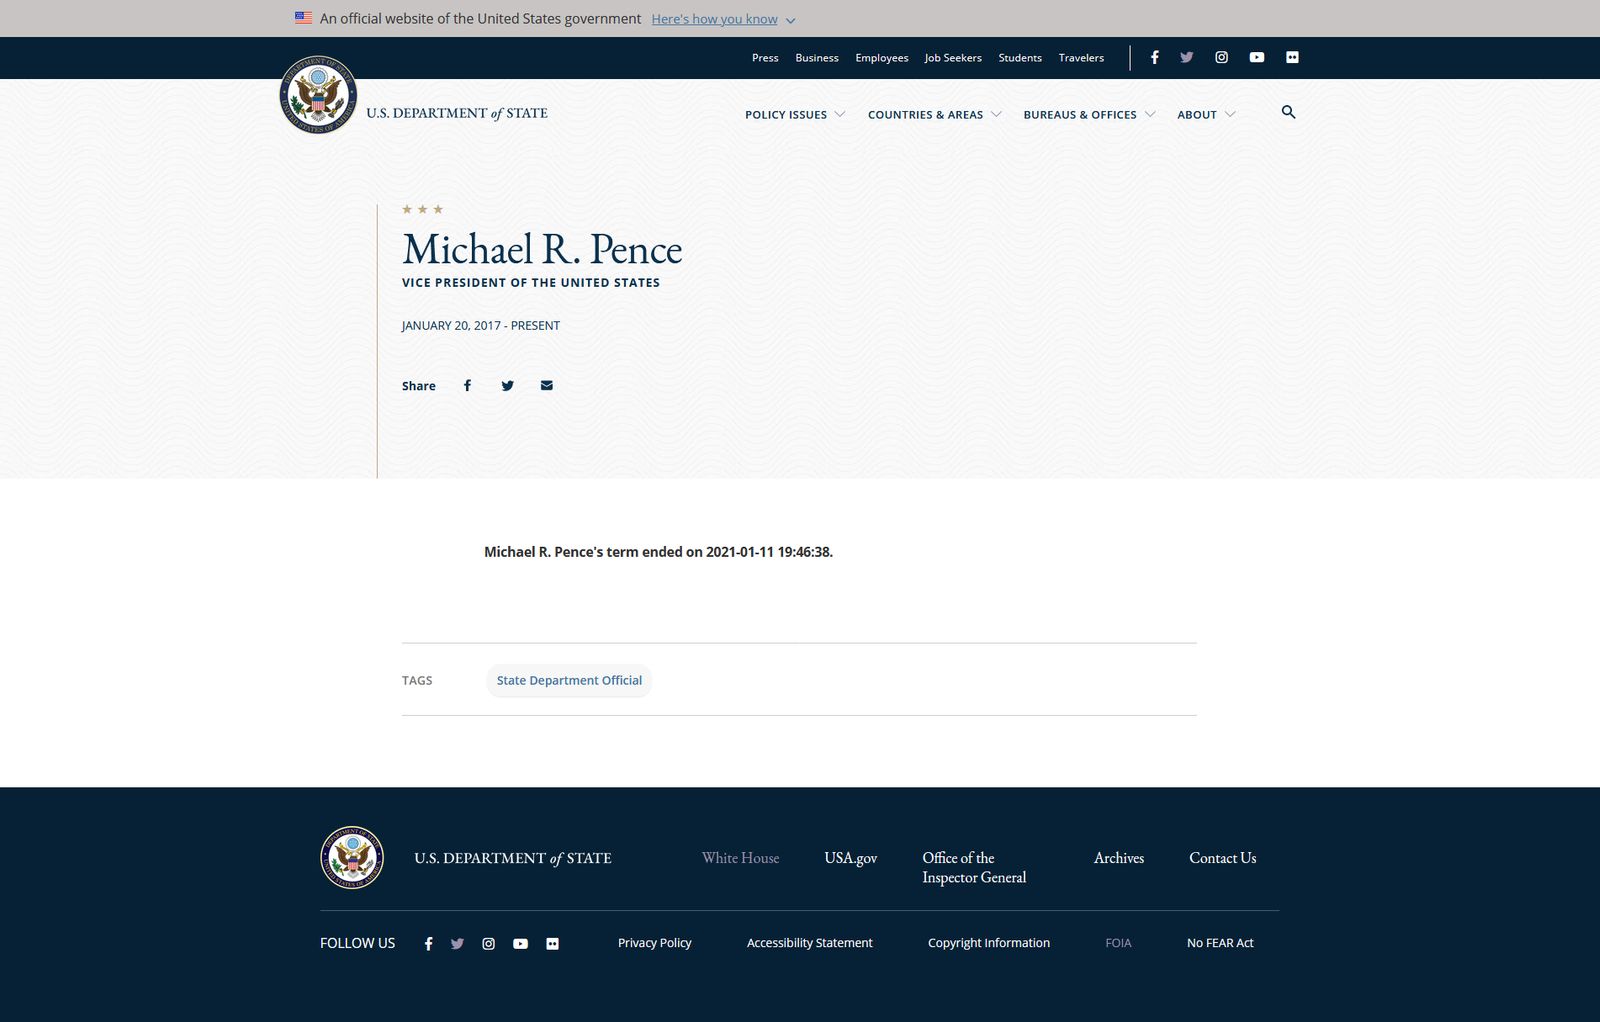 لقطة شاشة من صفحة على موقع الخارجية الأميركية تظهر رسالة بأن ولاية نائب الرئيس مايك بنس انتهت في 11 يناير 2021. - الشرق